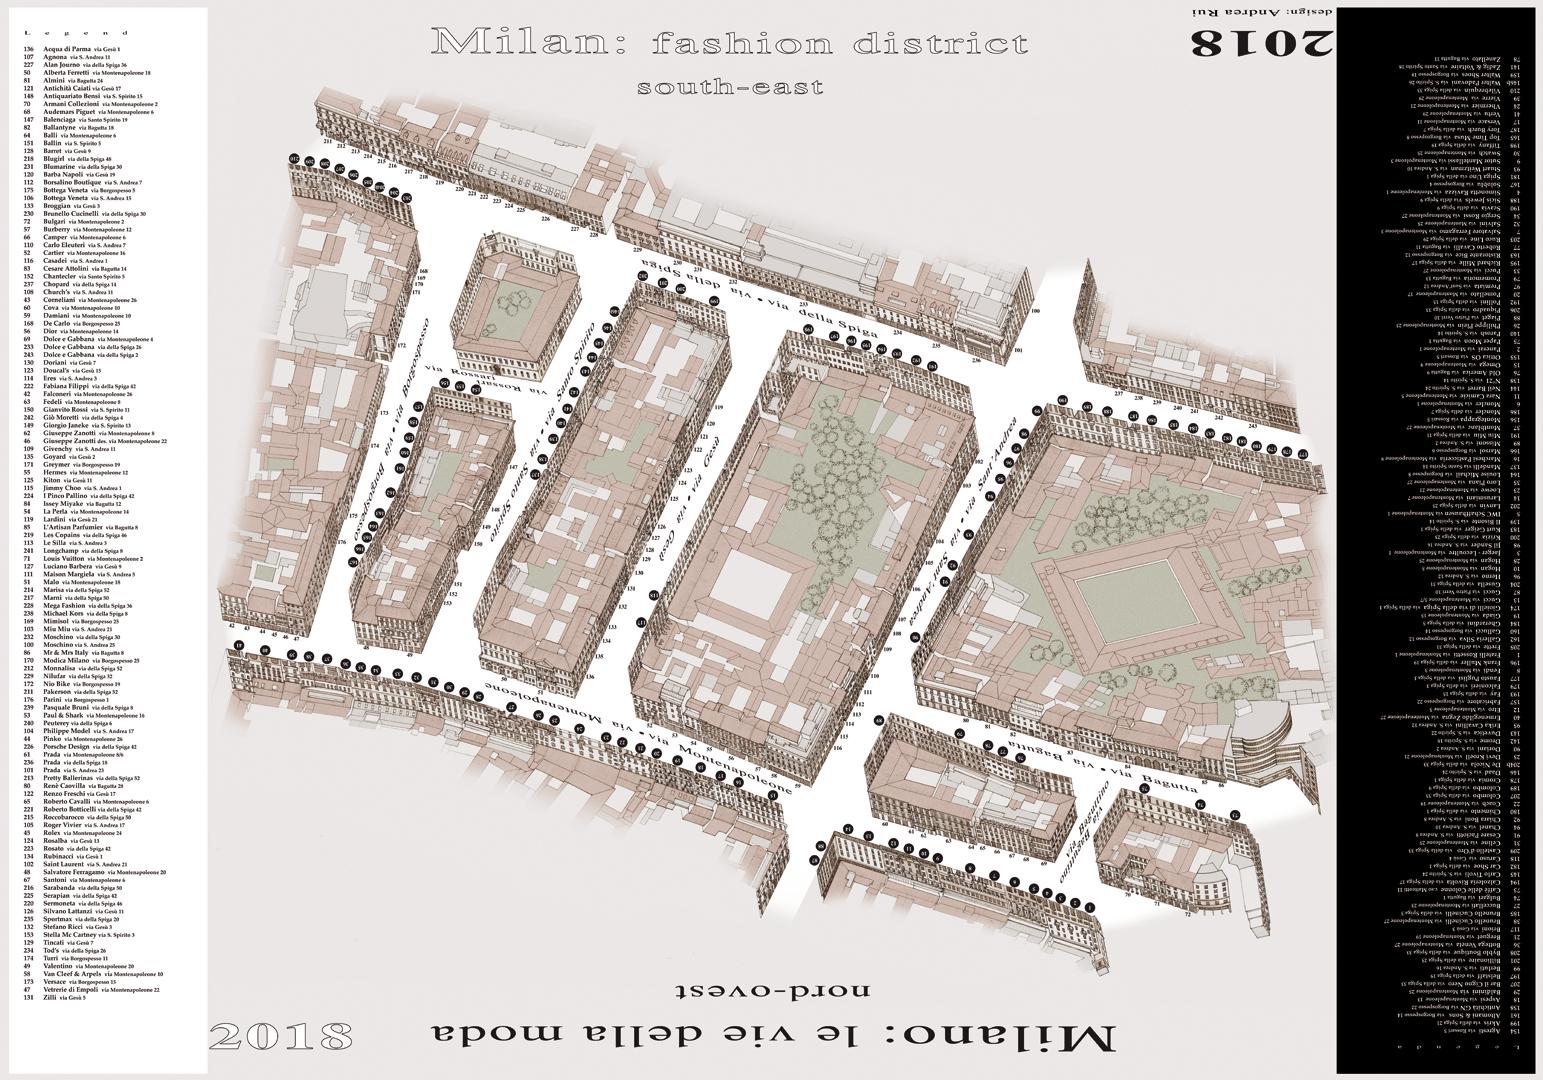 Il Quadrilatero della moda a Milano